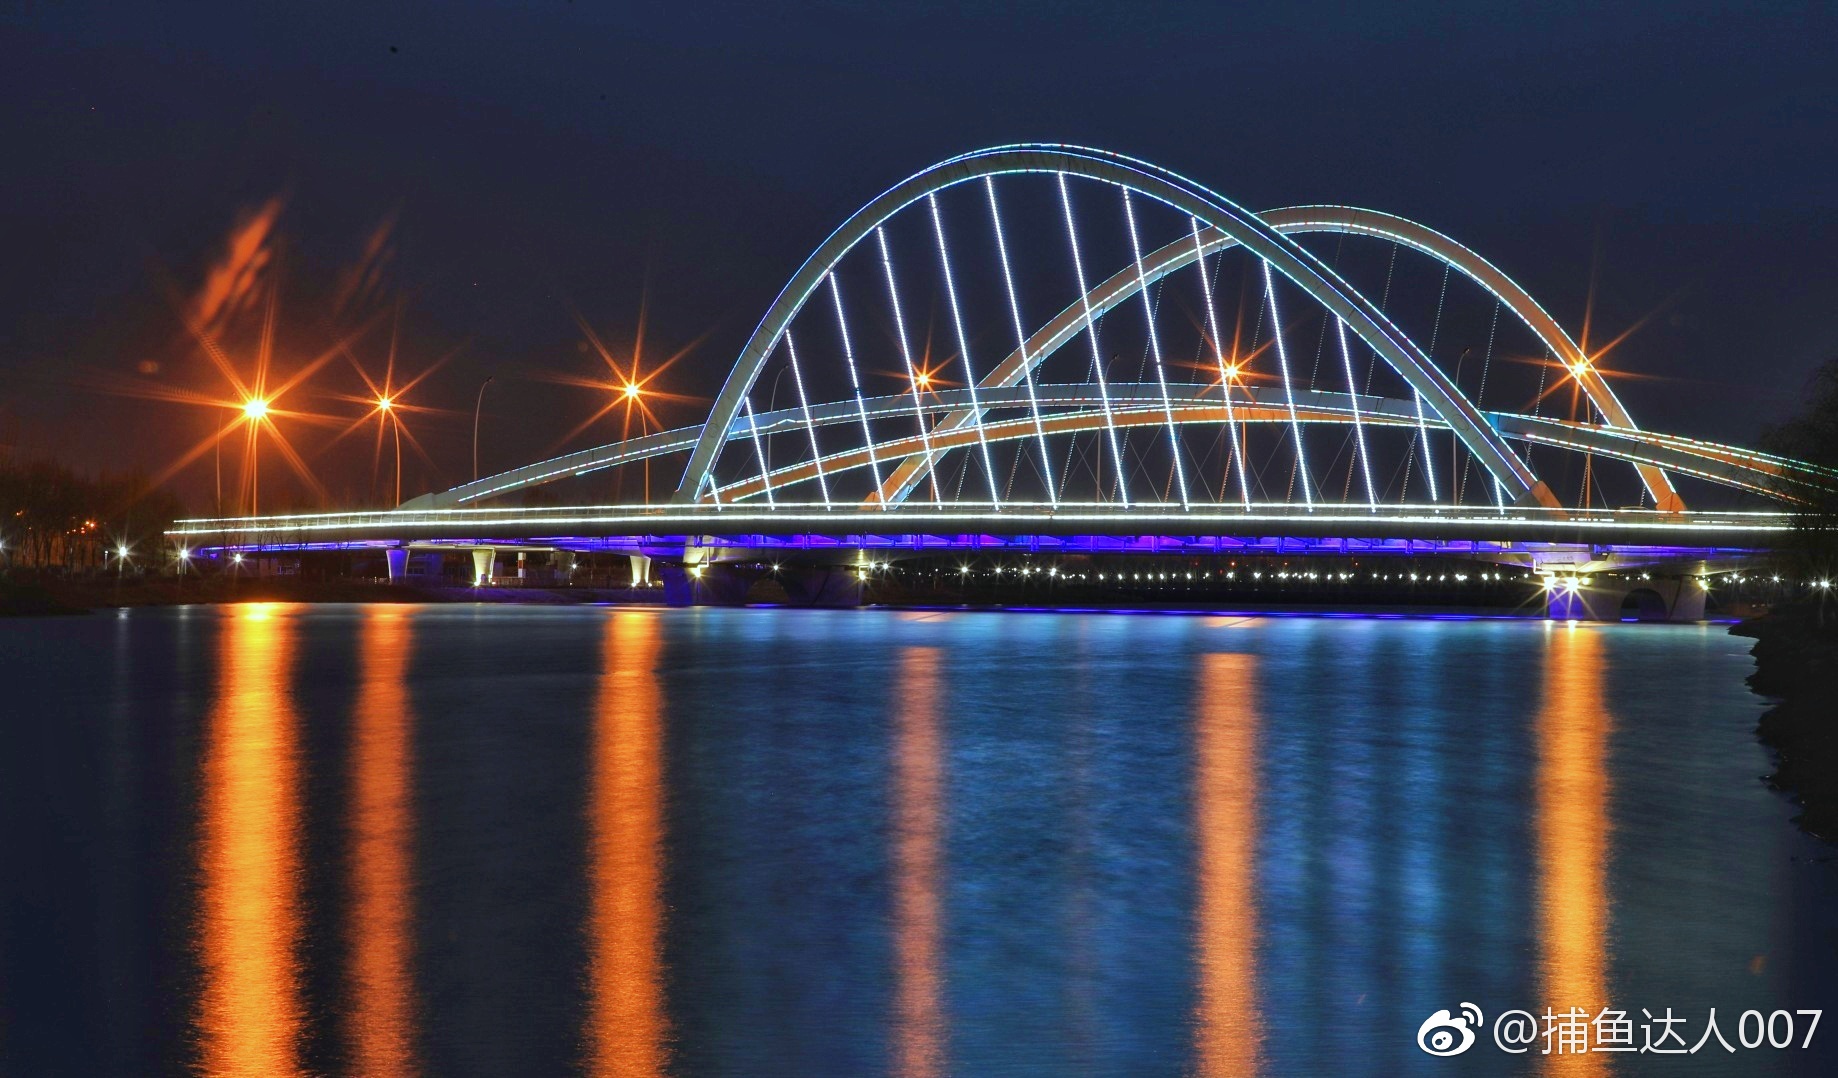 忻州云中河夜景@中国摄影师联盟